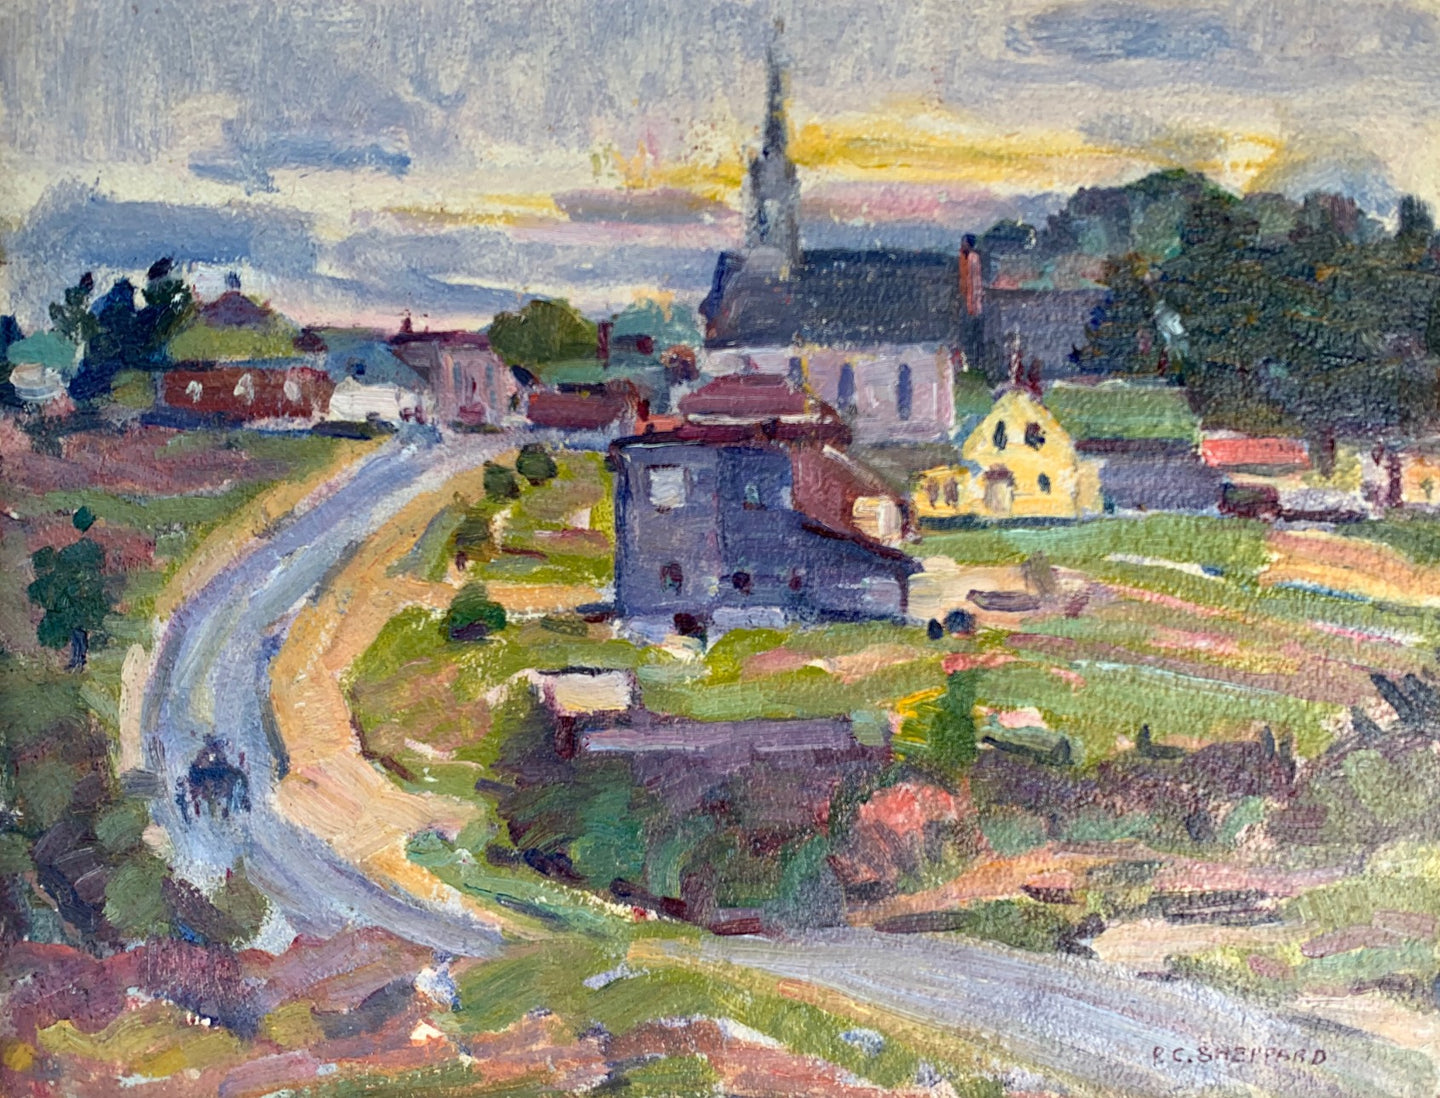 Rural Village in Eastern Townships, Quebec